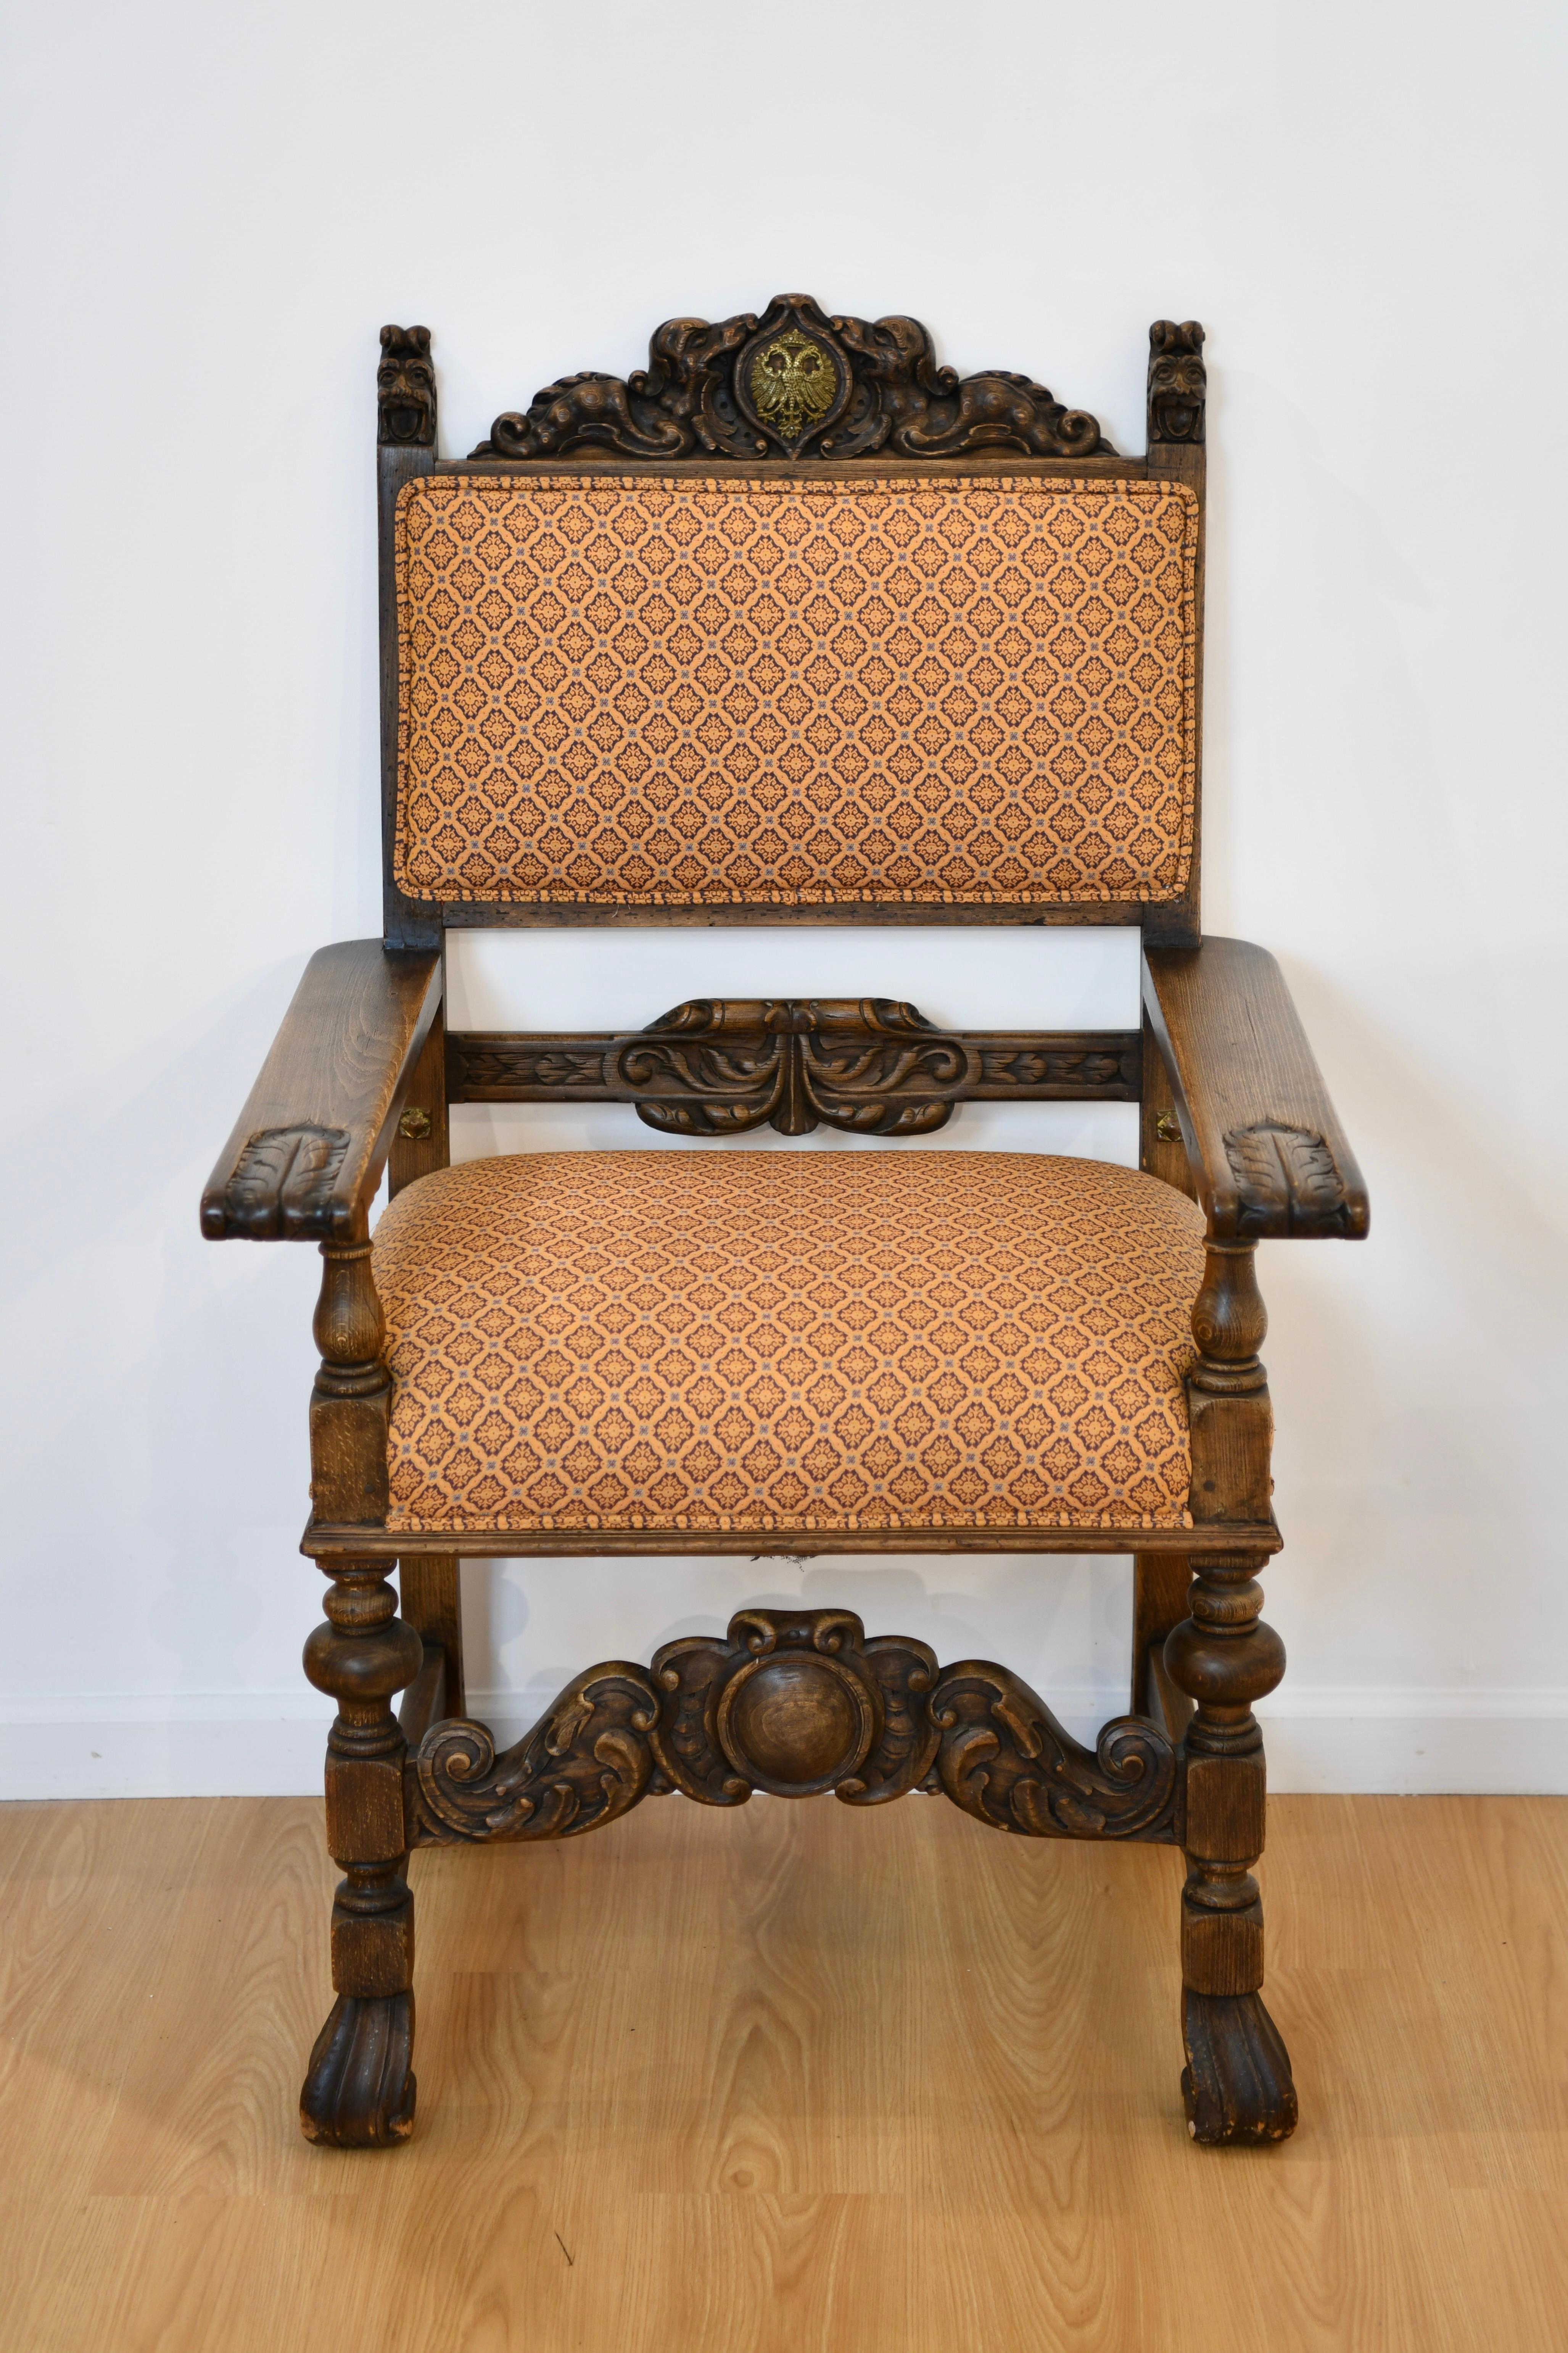 Ancienne chaise russe à trône abondamment sculptée et tapissée dans des tons neutres. Dimensions : 46 